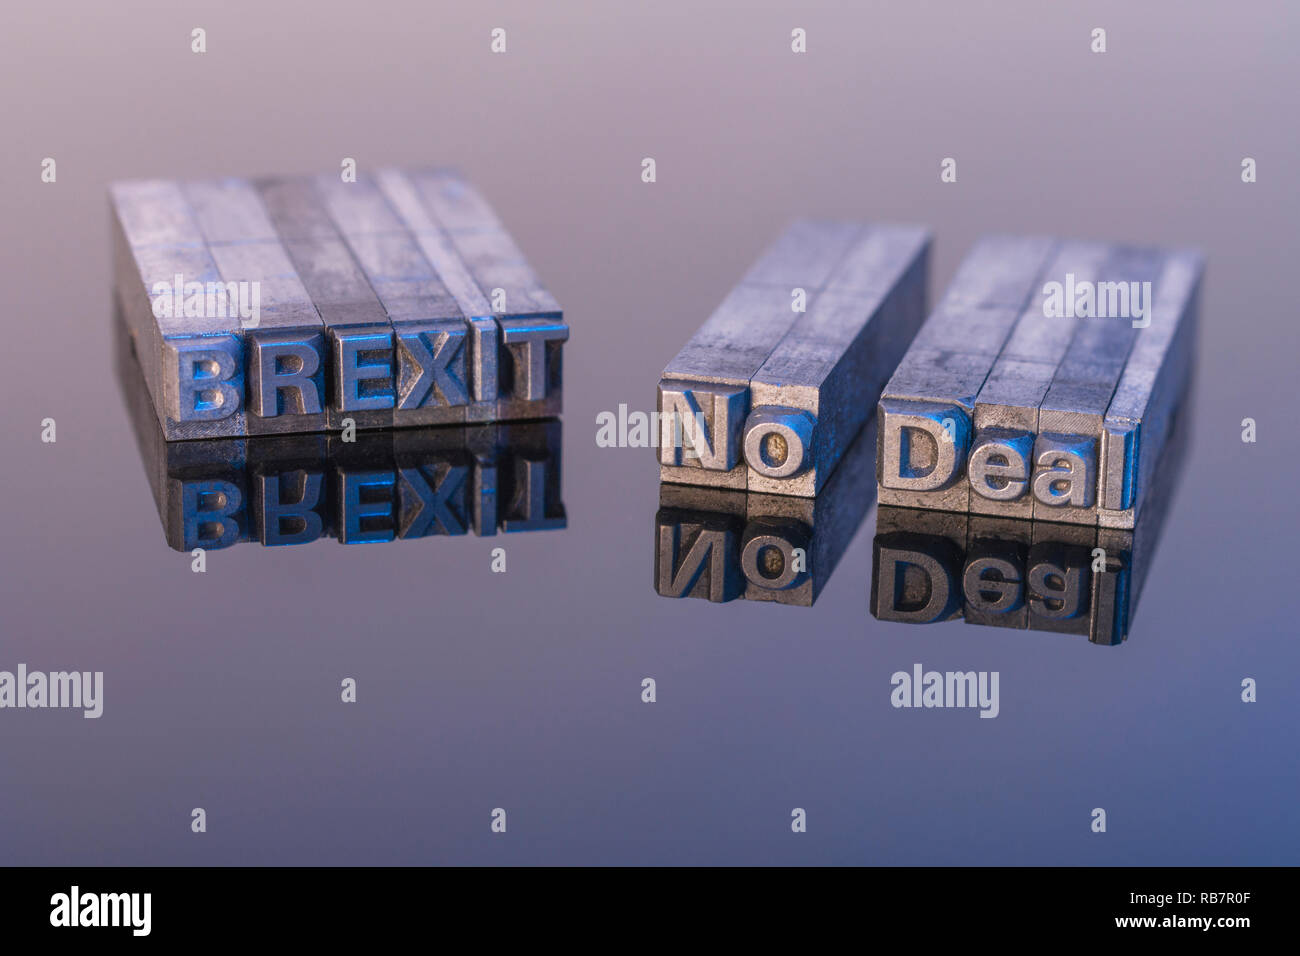 "No Deal" der Brexit wurde in der Druckerschrift auf einer reflektierenden schwarzen Oberfläche geschrieben. Metapher Großbritanniens Brexit-Endspiel & No-Deal Brexit-Szenario. Siehe Hinweise Stockfoto